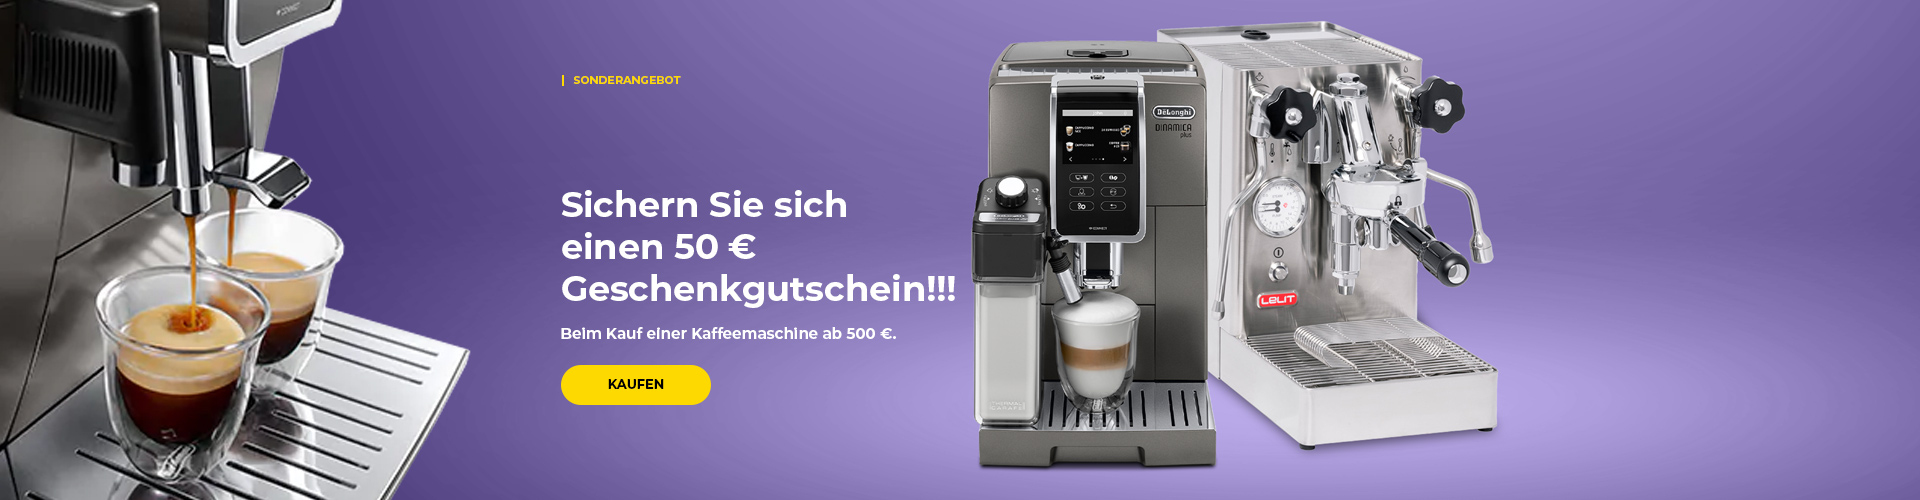 "Sichern Sie sich einen 50 € Geschenkgutschein!!! Beim Kauf einer Kaffeemaschine ab 500 €."